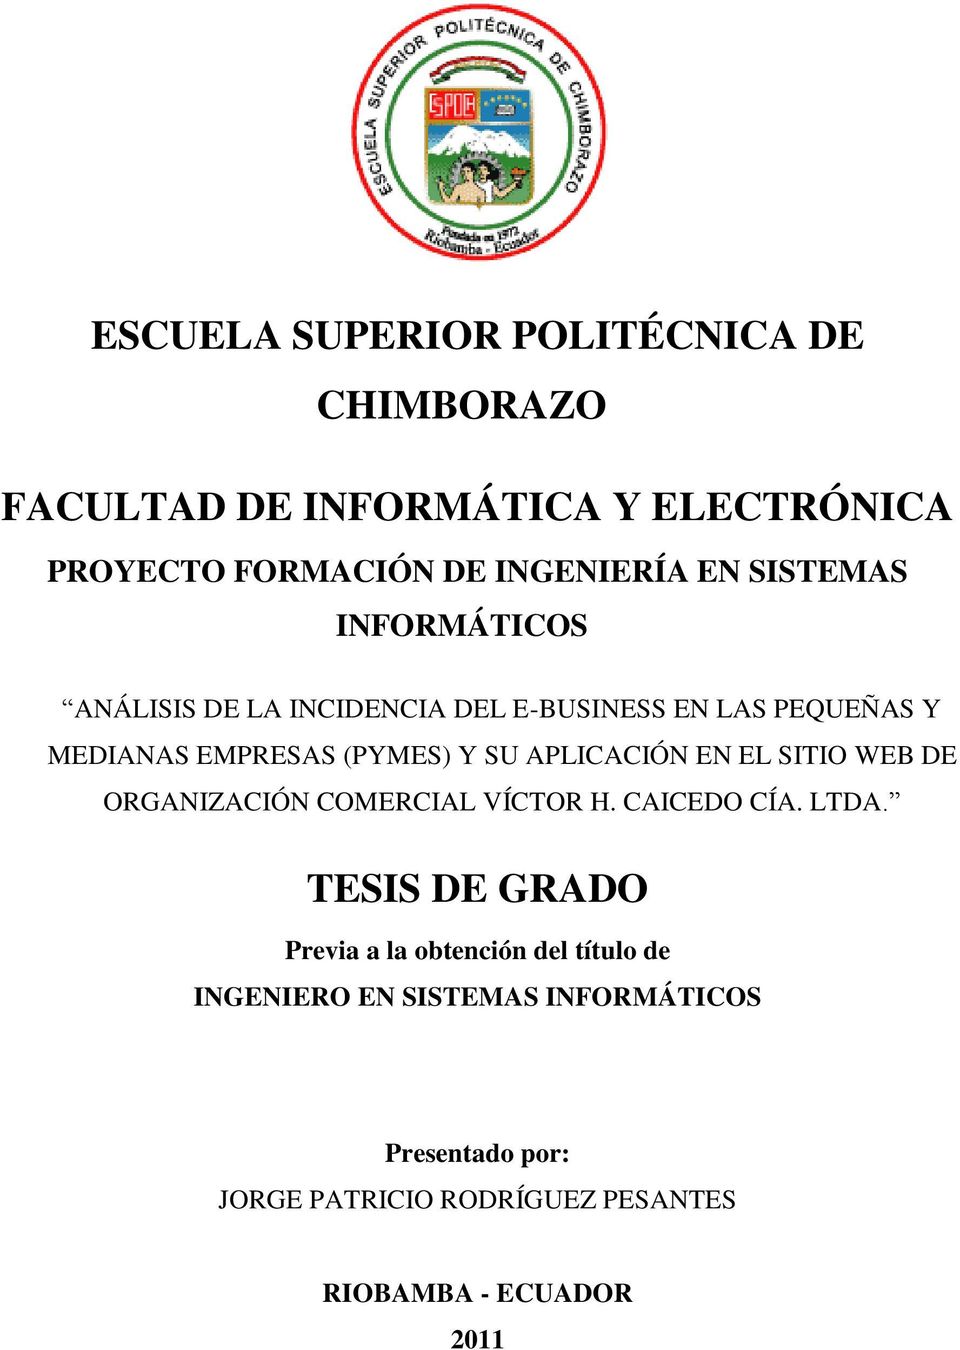 APLICACIÓN EN EL SITIO WEB DE ORGANIZACIÓN COMERCIAL VÍCTOR H. CAICEDO CÍA. LTDA.